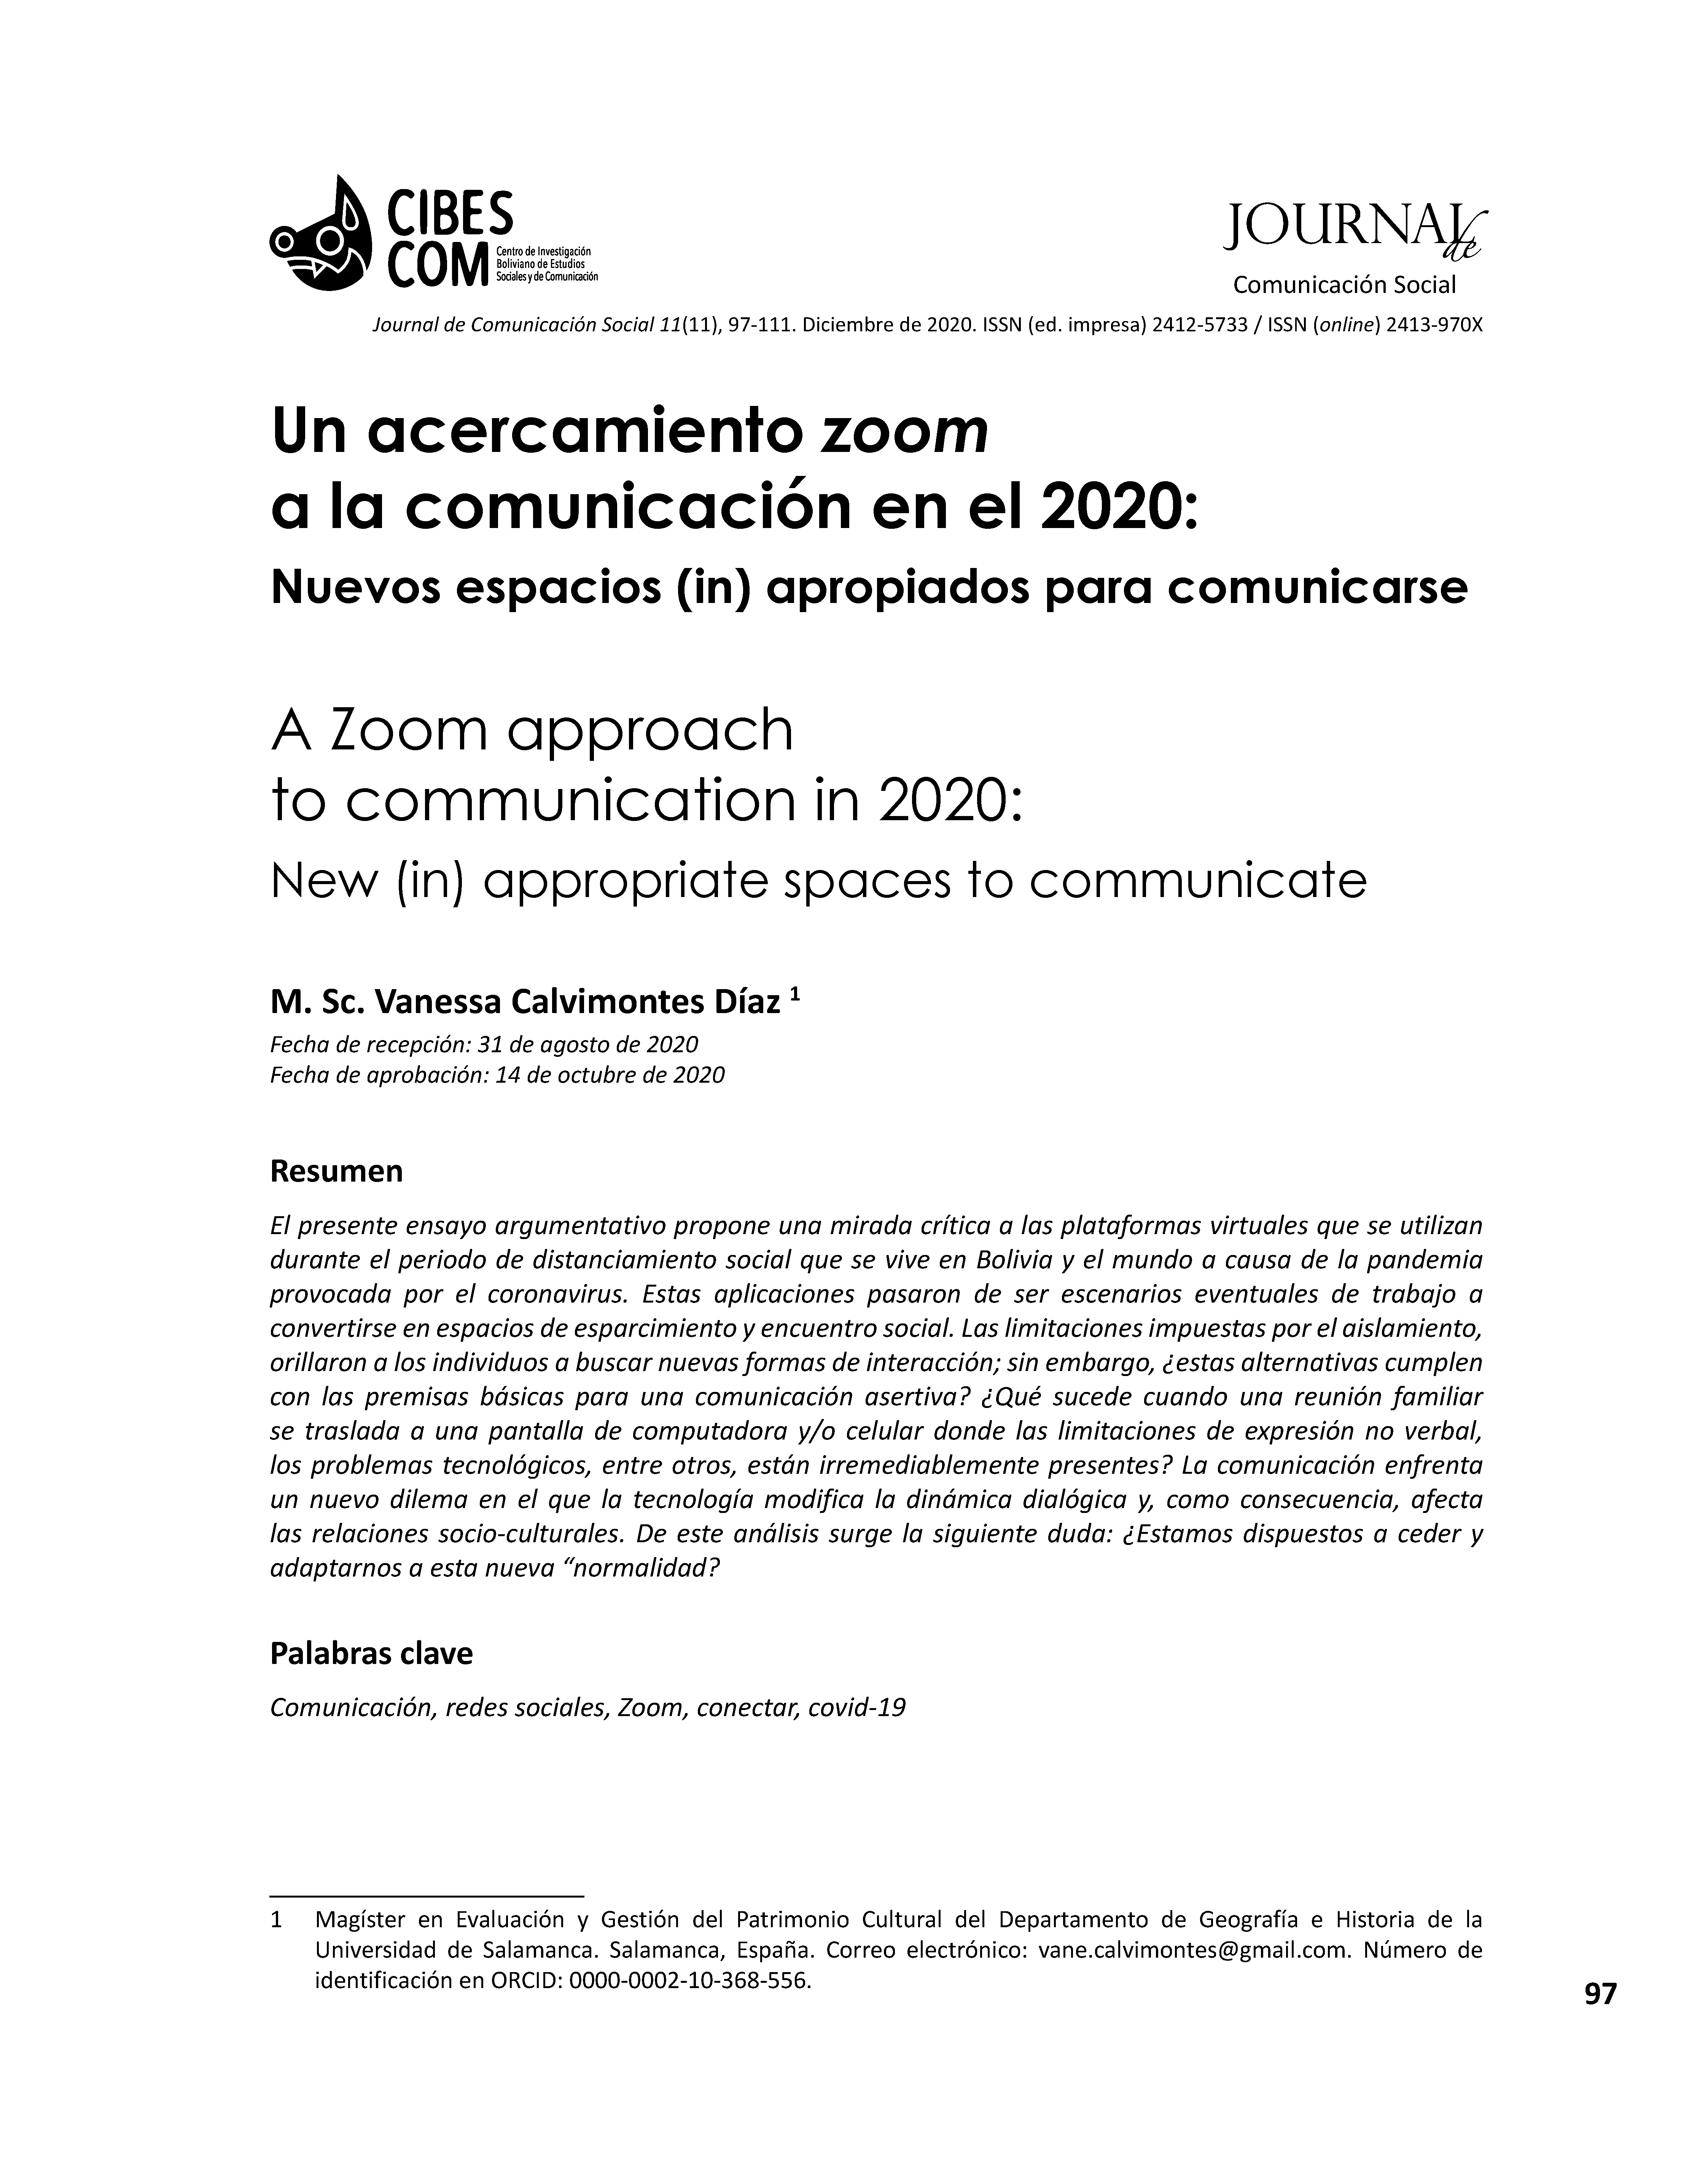 Un acercamiento zoom a la comunicación en el 2020